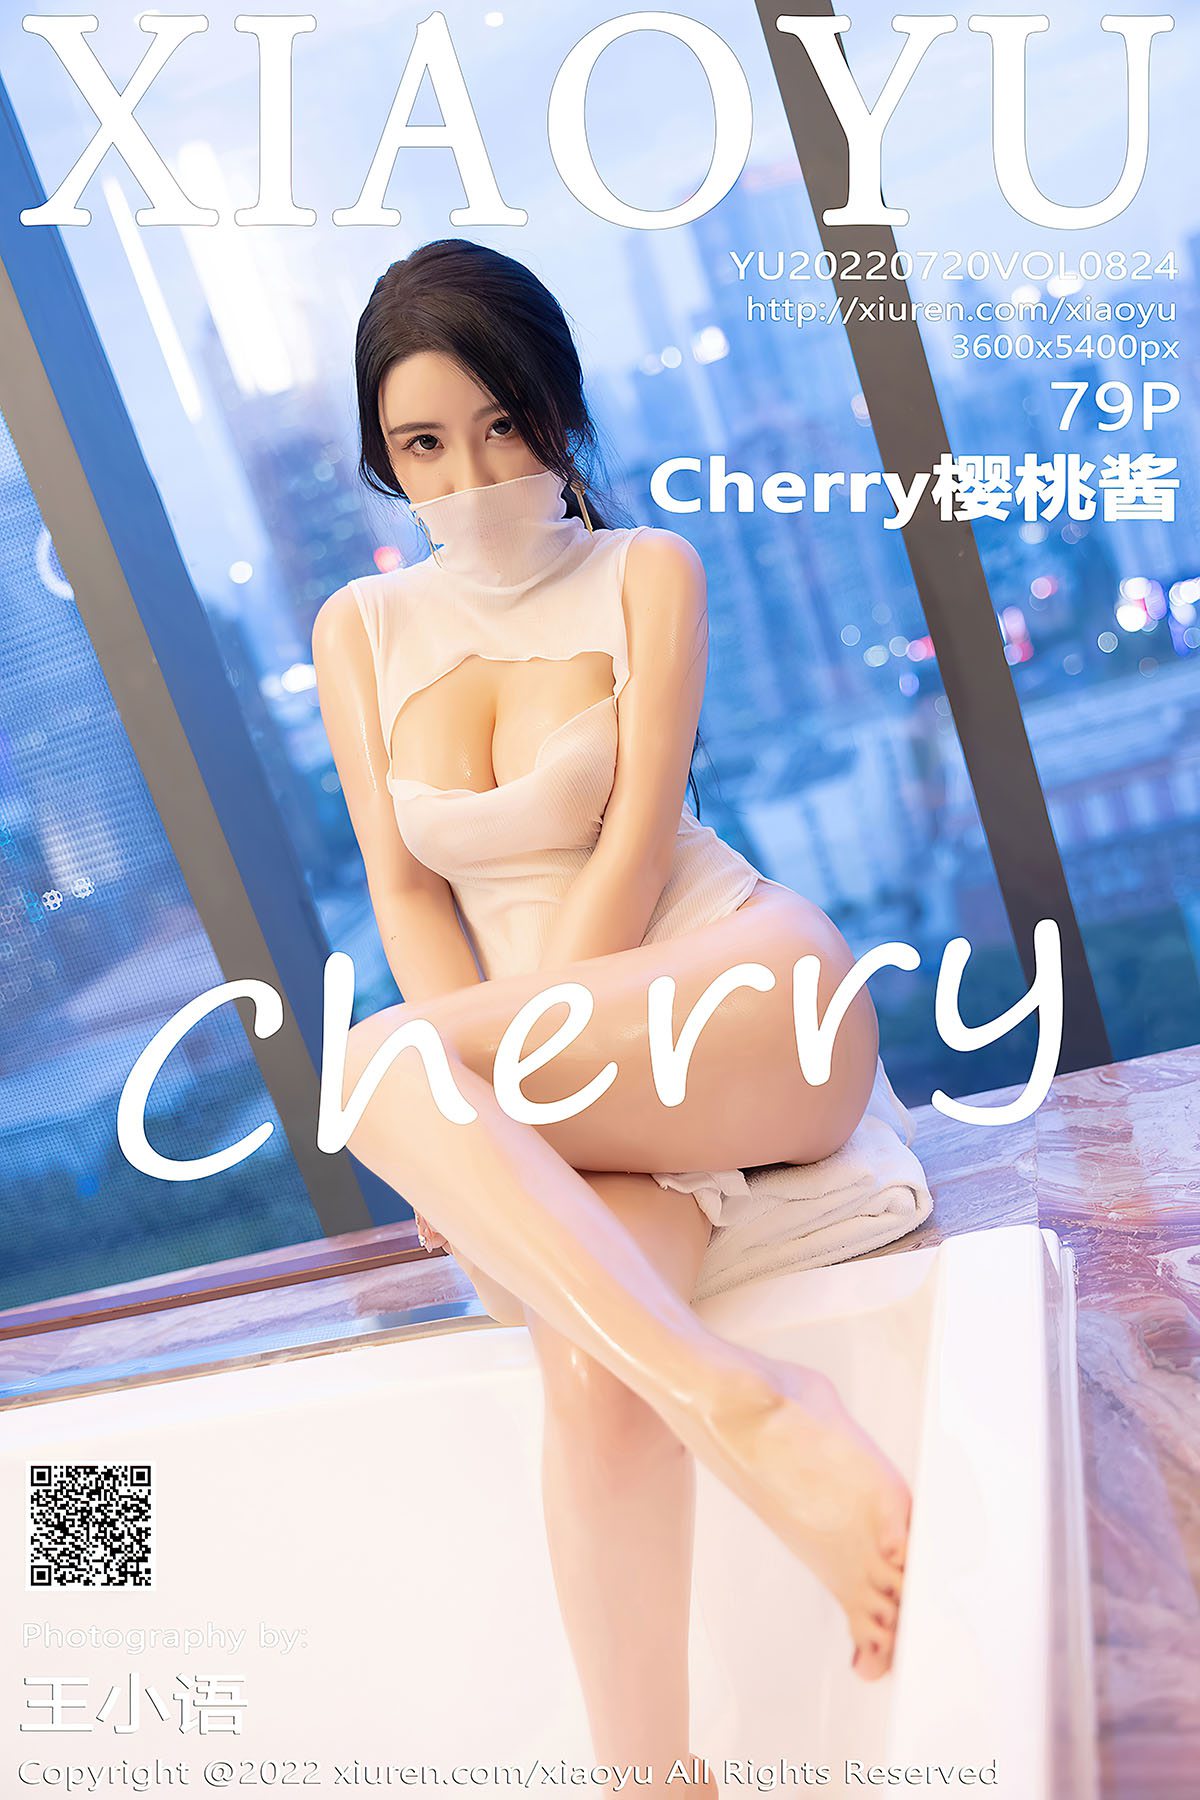 XiaoYu语画界 Vol.824 Cherry Ying Tao Jiang